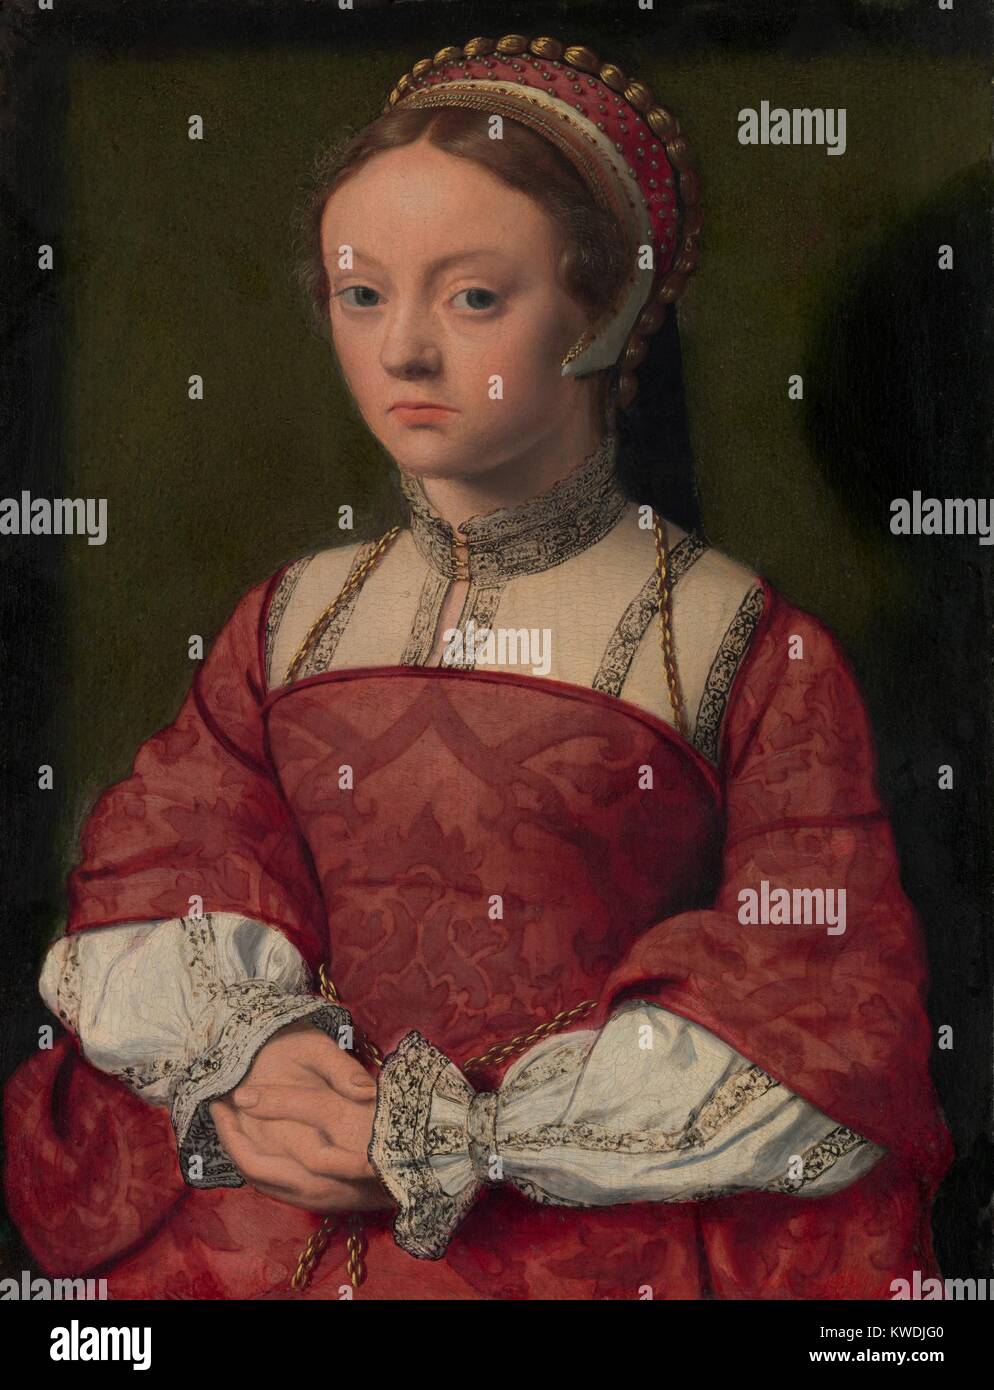 PORTRAIT OF A young woman, 1535, Russisch, Northern Renaissance peinture à l'huile. Elle porte un collier haut brodé dans le cadre d'un changement de robe corsage corset. Son plafond est orné d'une tresse d'or et de perles (BSLOC   2017 16 115) Banque D'Images